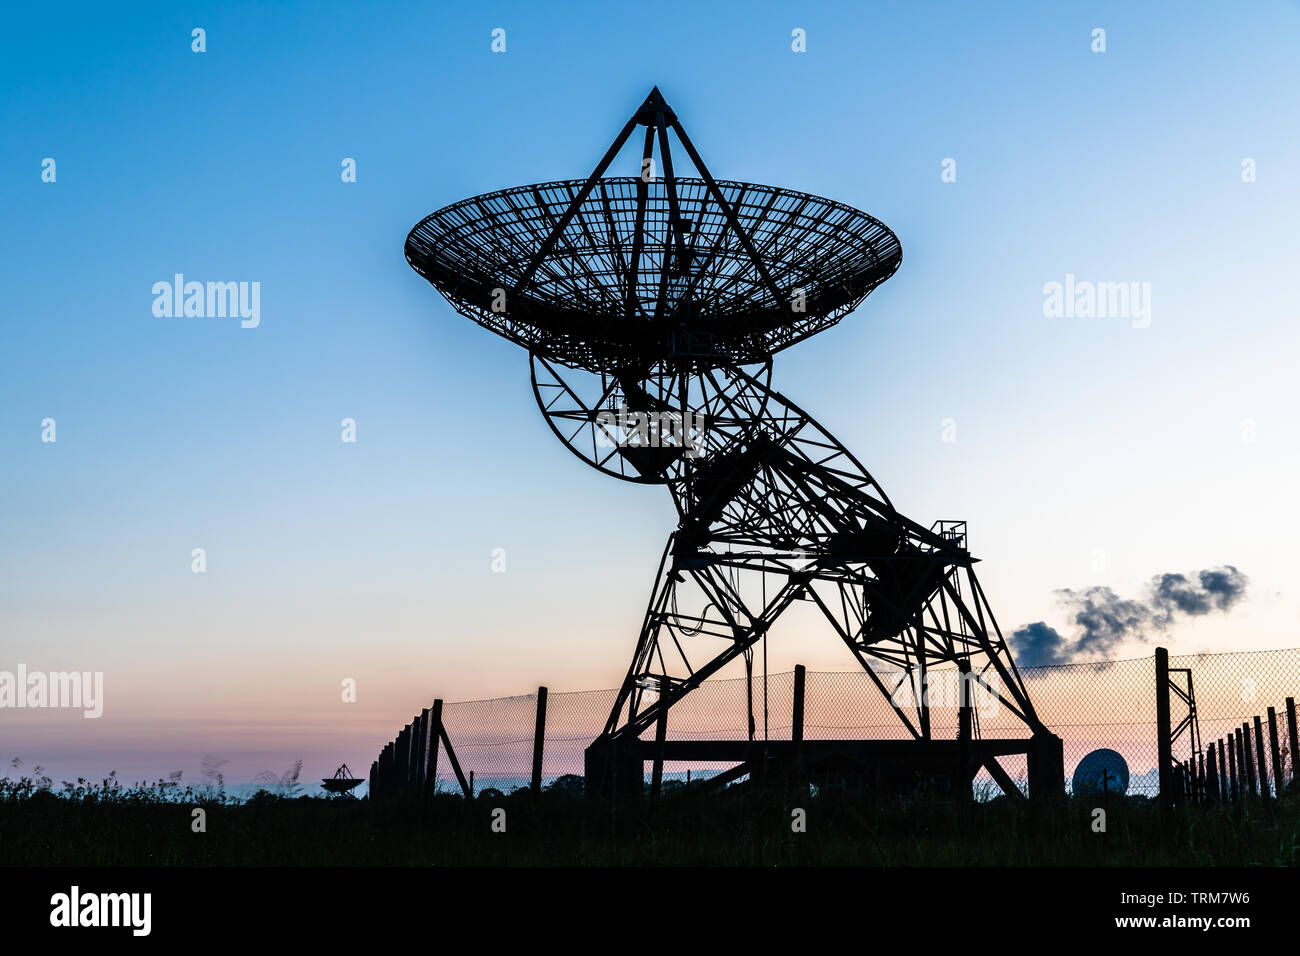 Observatoire de Radioastronomie désaffecté au coucher du soleil, Cambridge au Royaume-Uni Banque D'Images